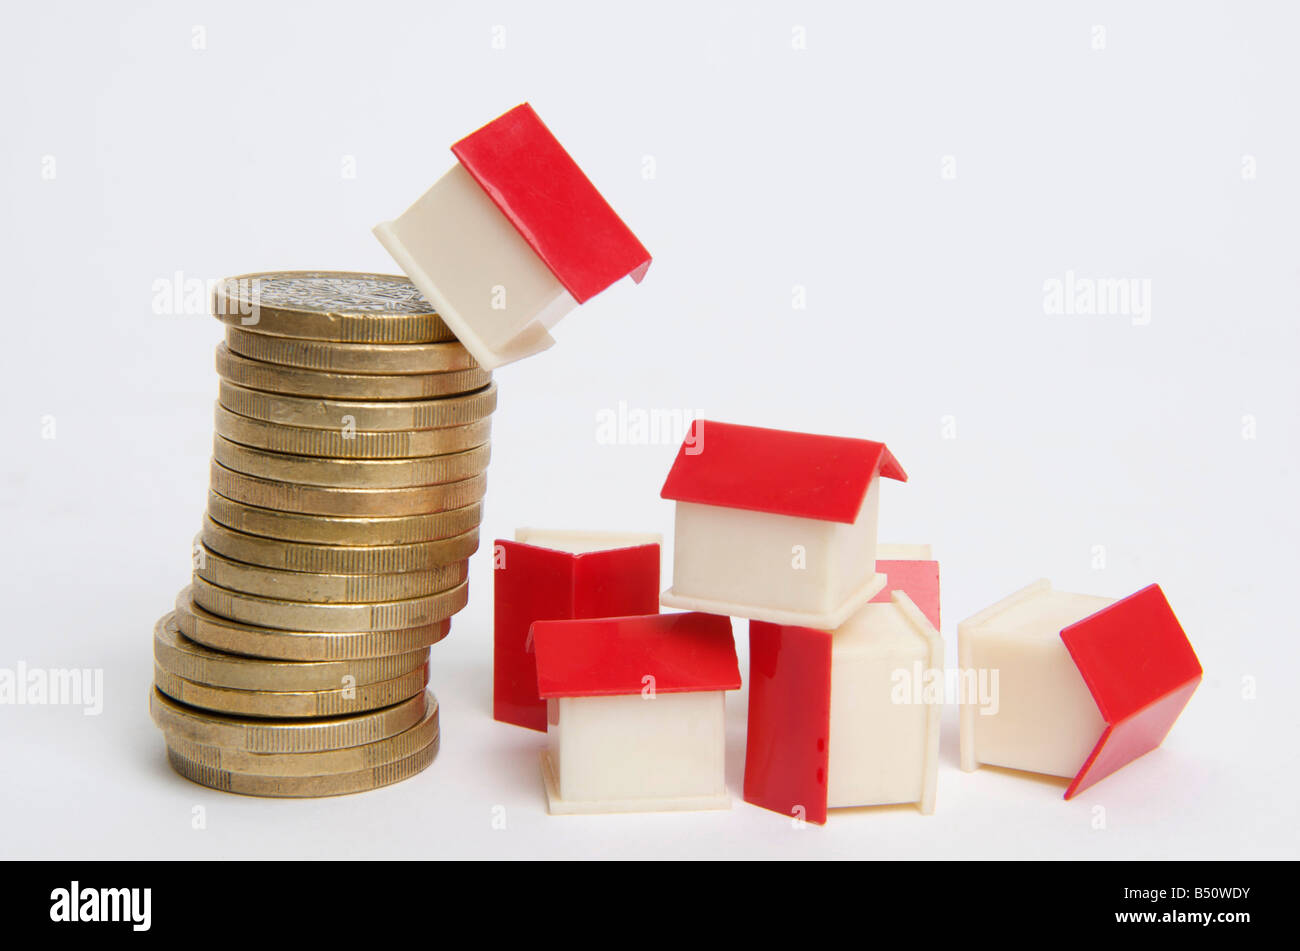 Casa in miniatura sulla pila di monete, immagine simbolica real estate Foto Stock